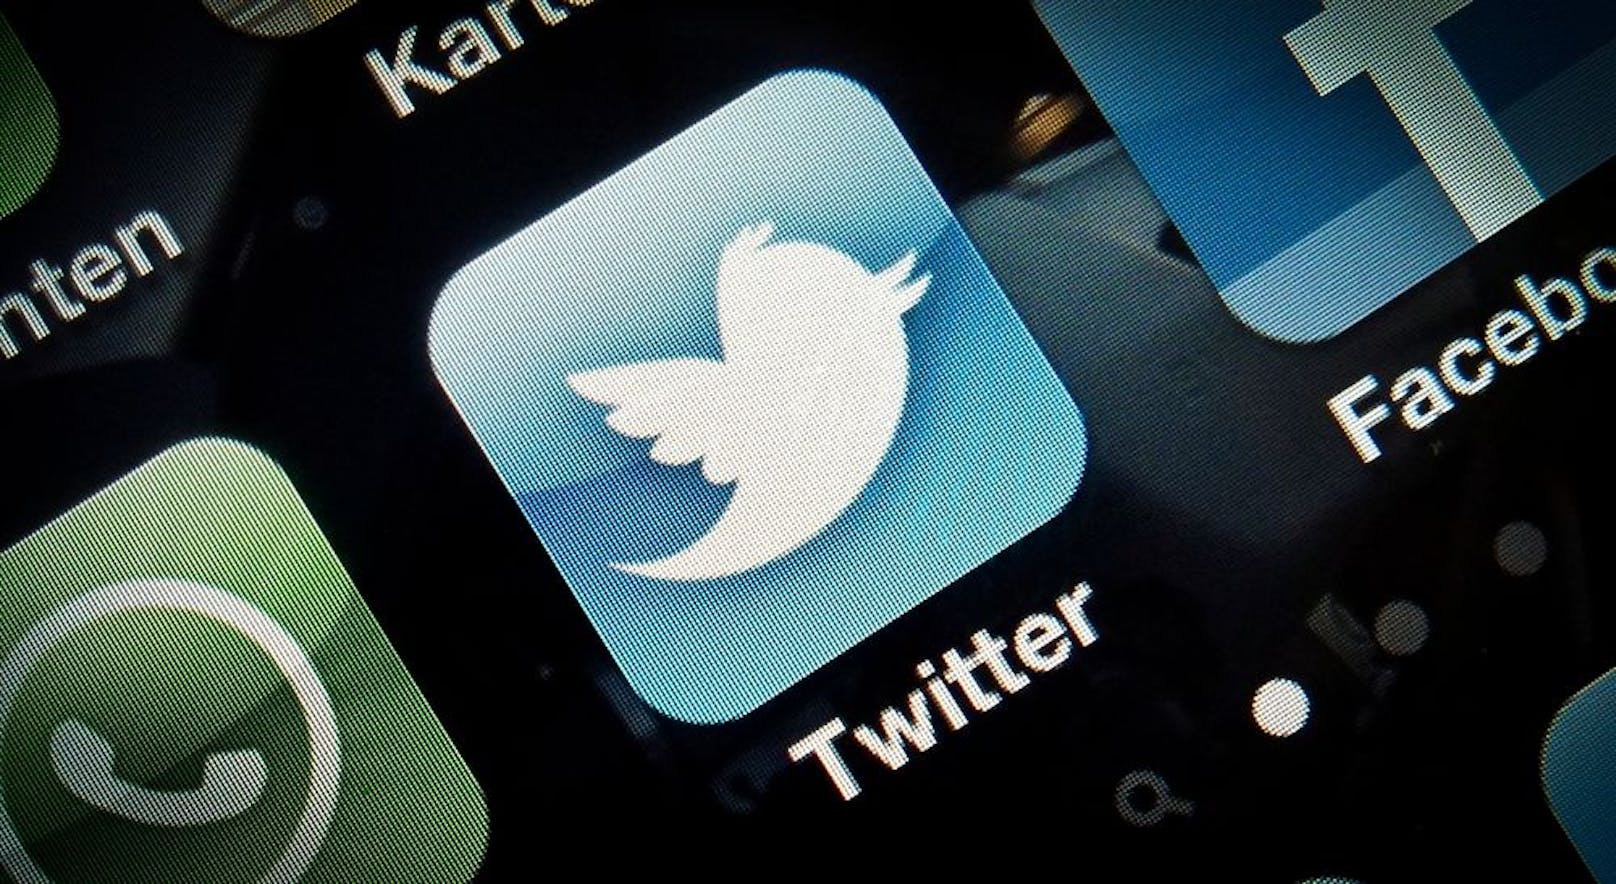 So geht Twitter nun gegen Fake News vor